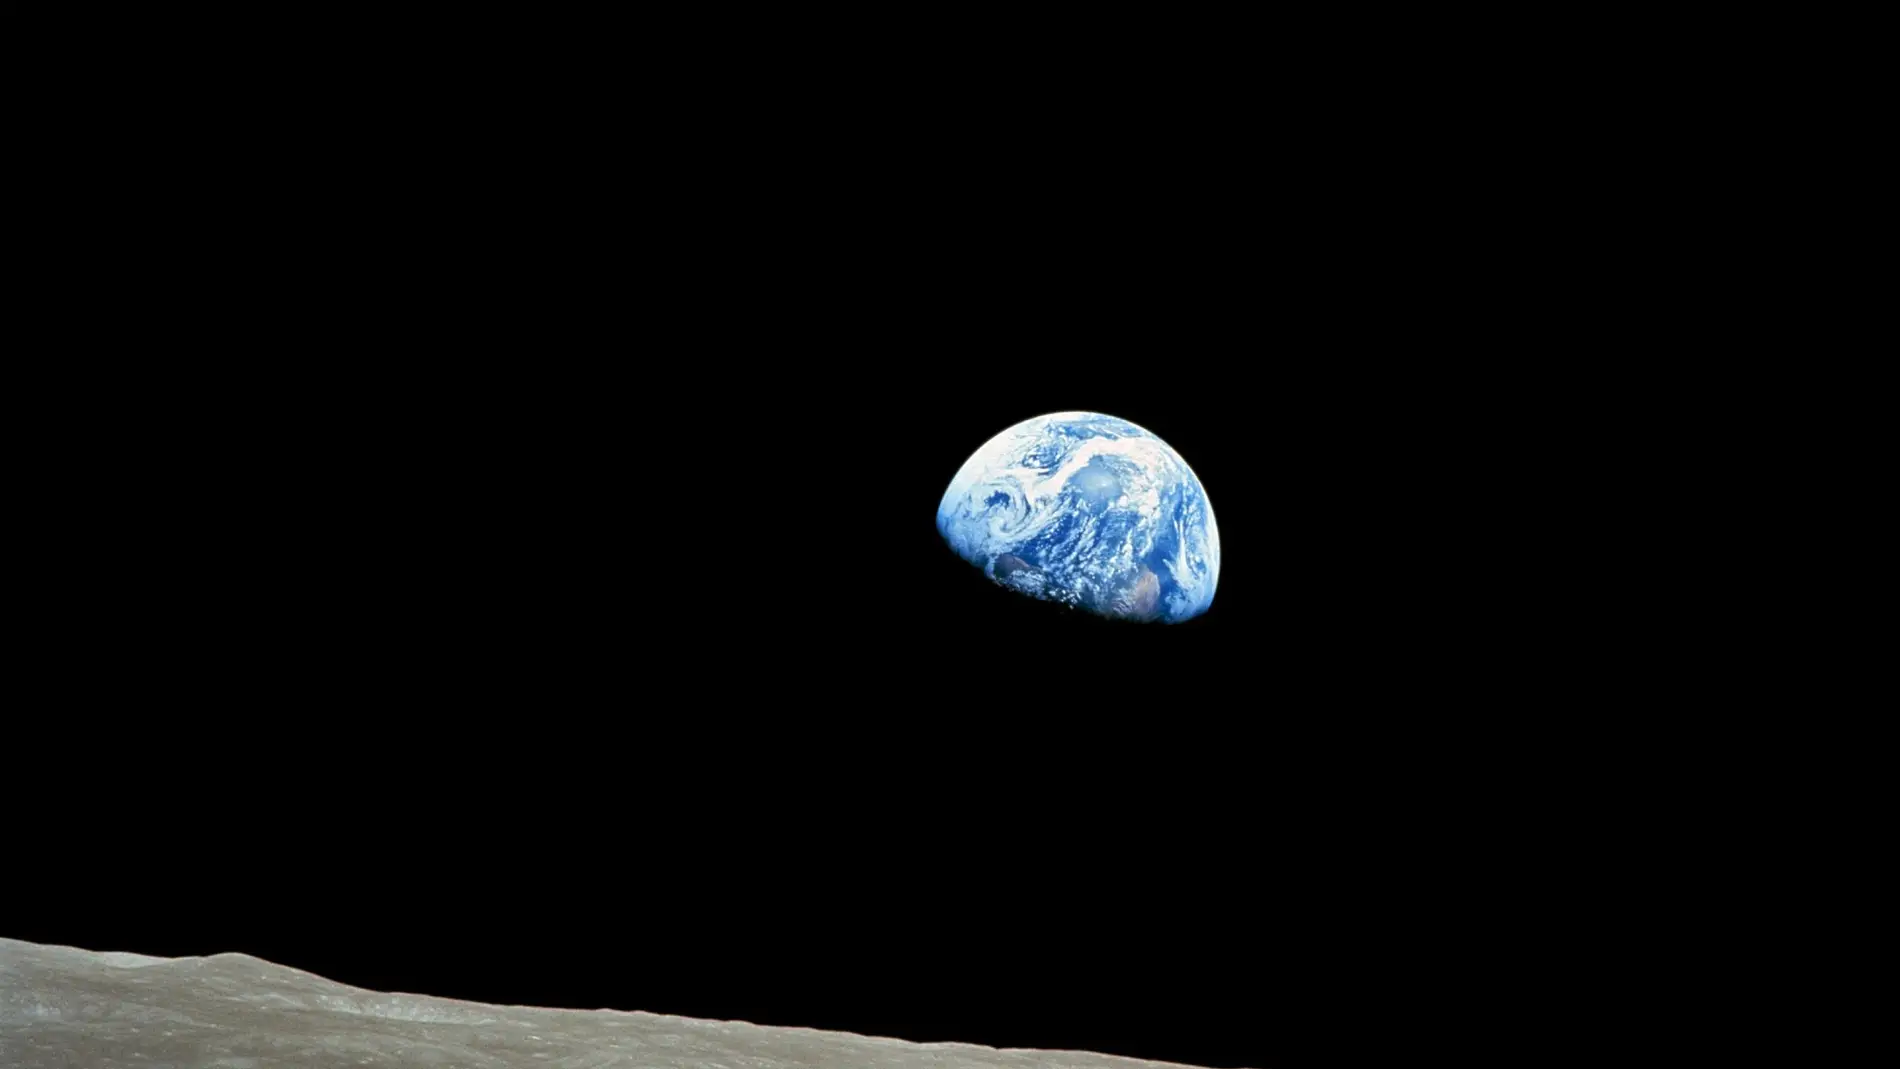 Imagen del planeta Tierra vista desde la Luna